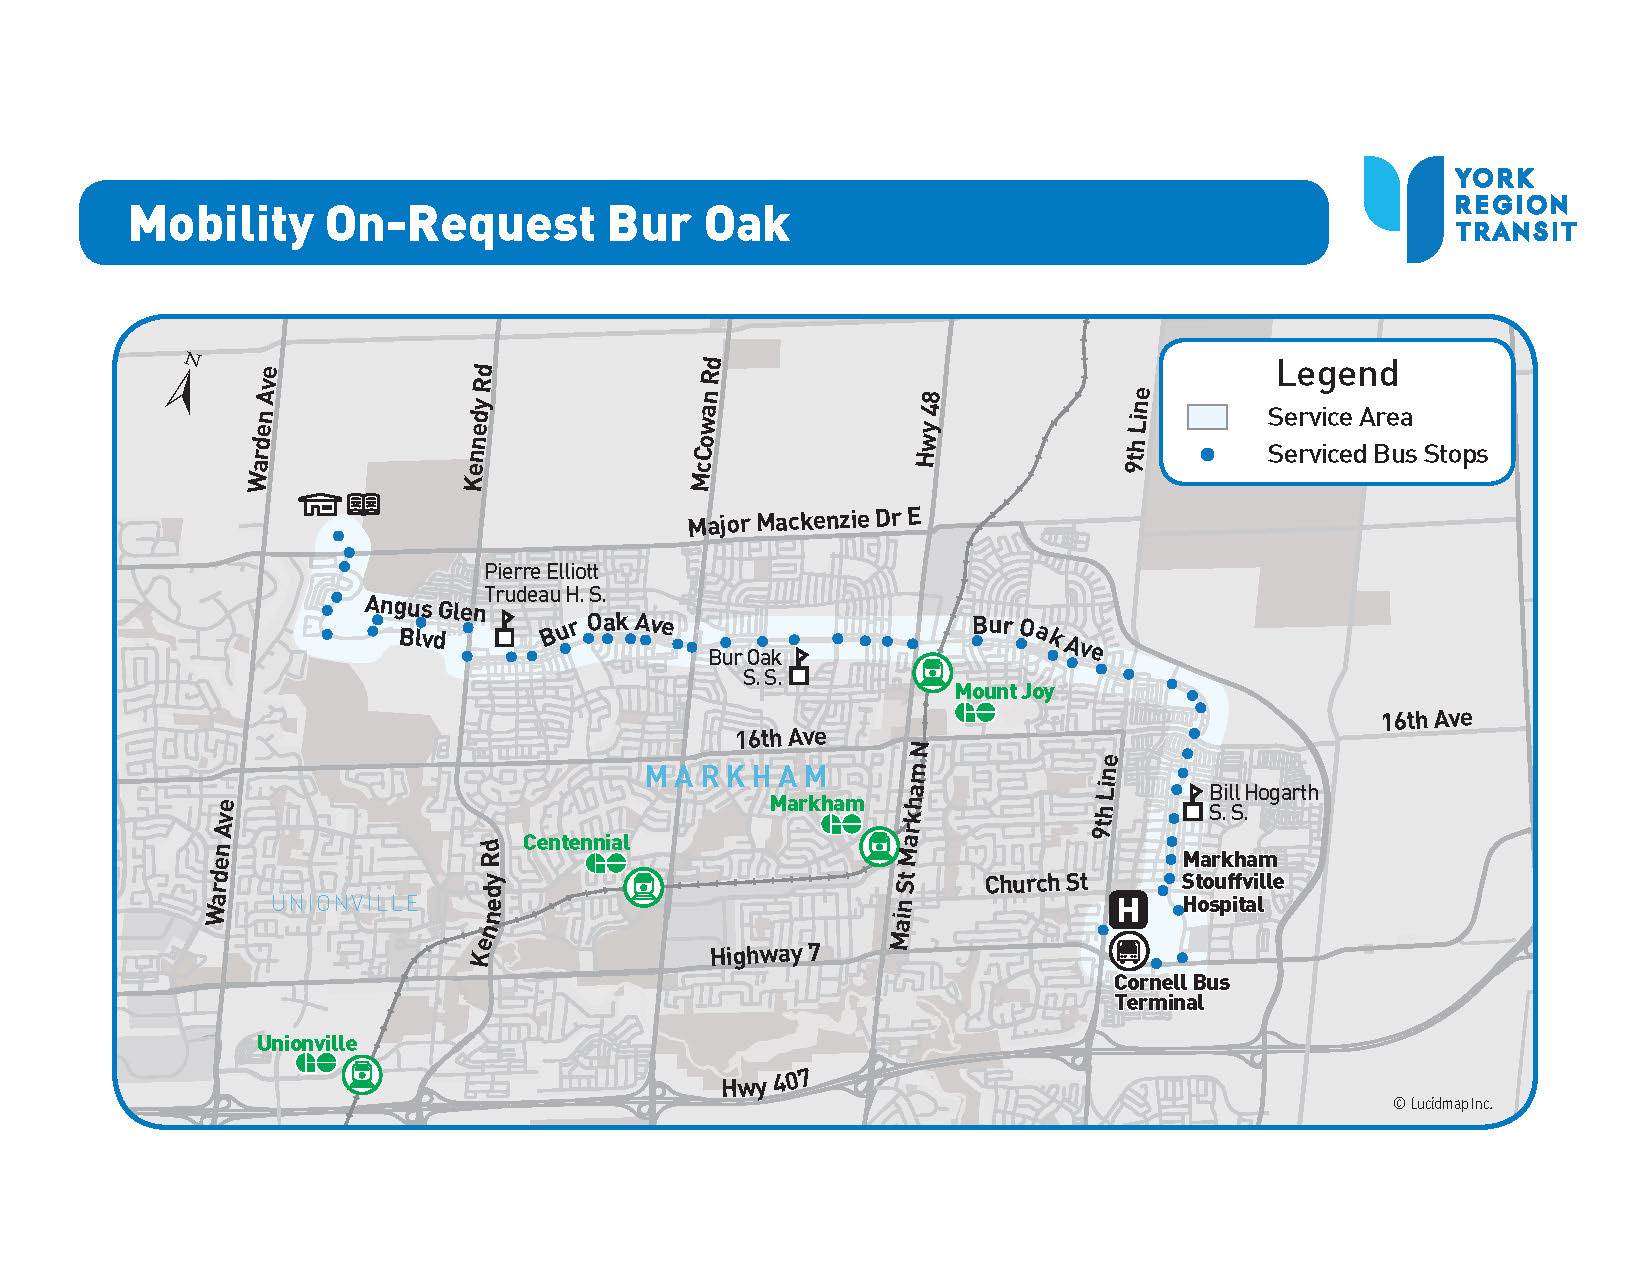 MOR Bur Oak service area map